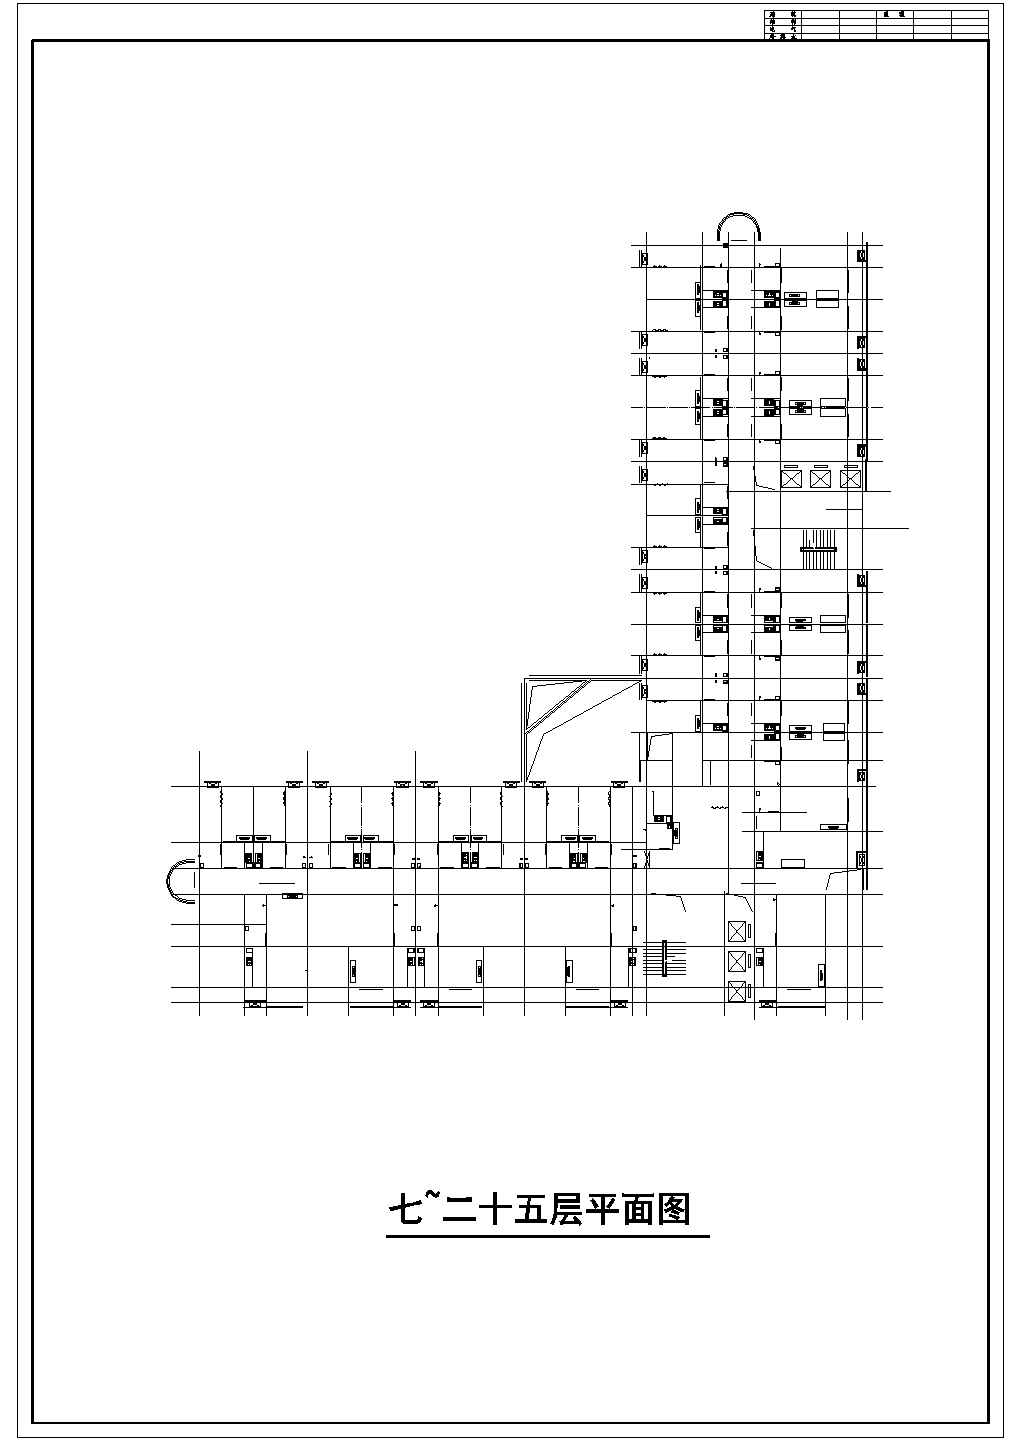 高层综合商业建筑结构施工设计cad图纸